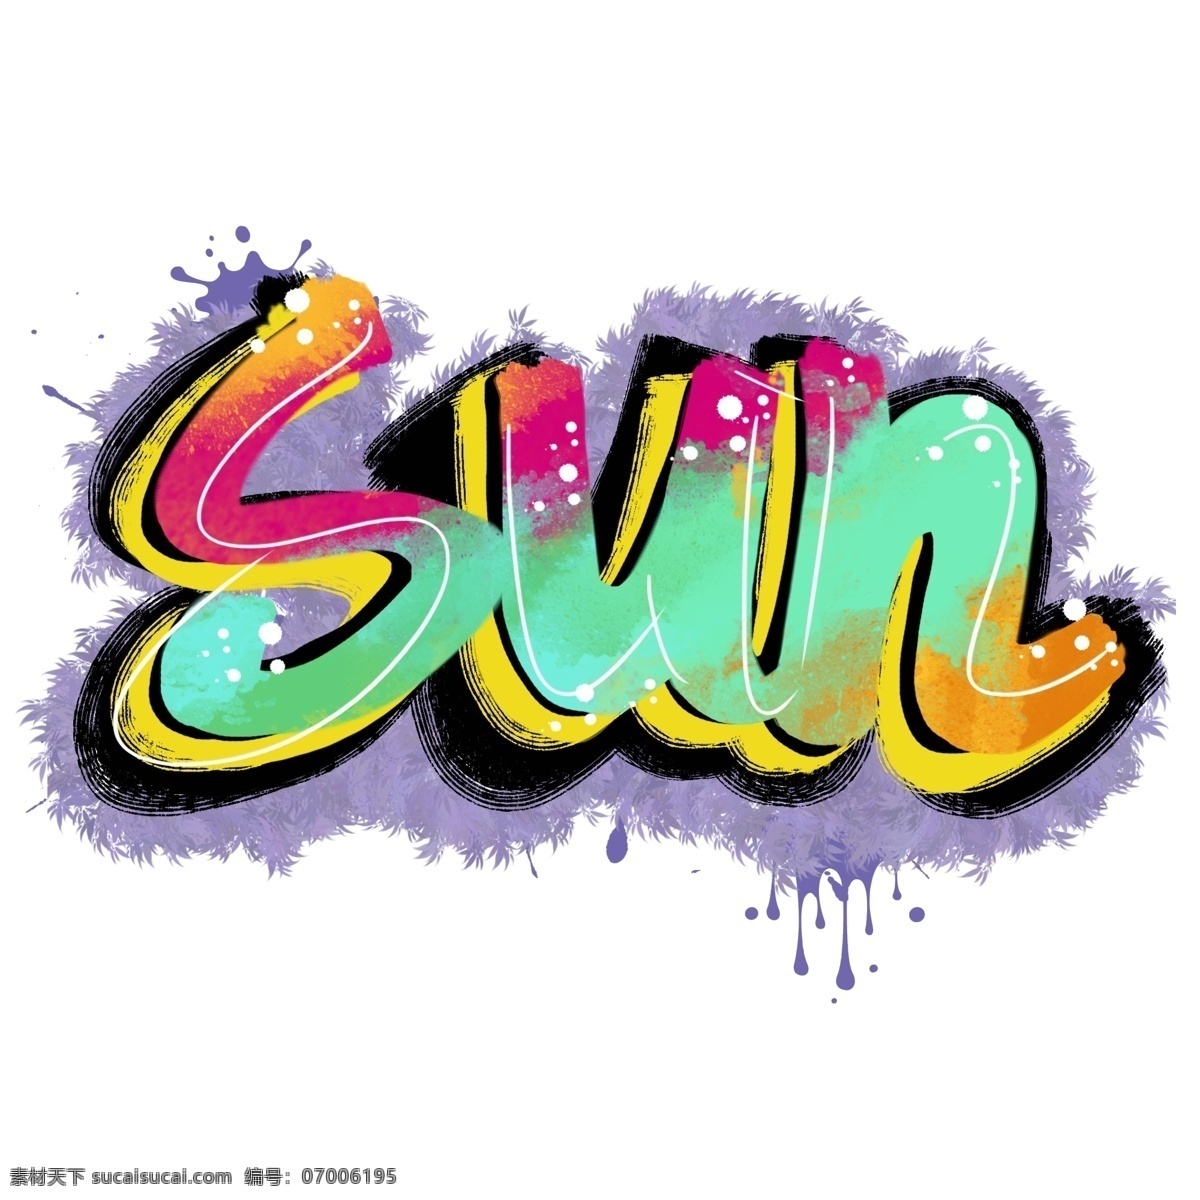 字体 涂鸦 撞 色 阳光 卡通 手绘 元素 撞色